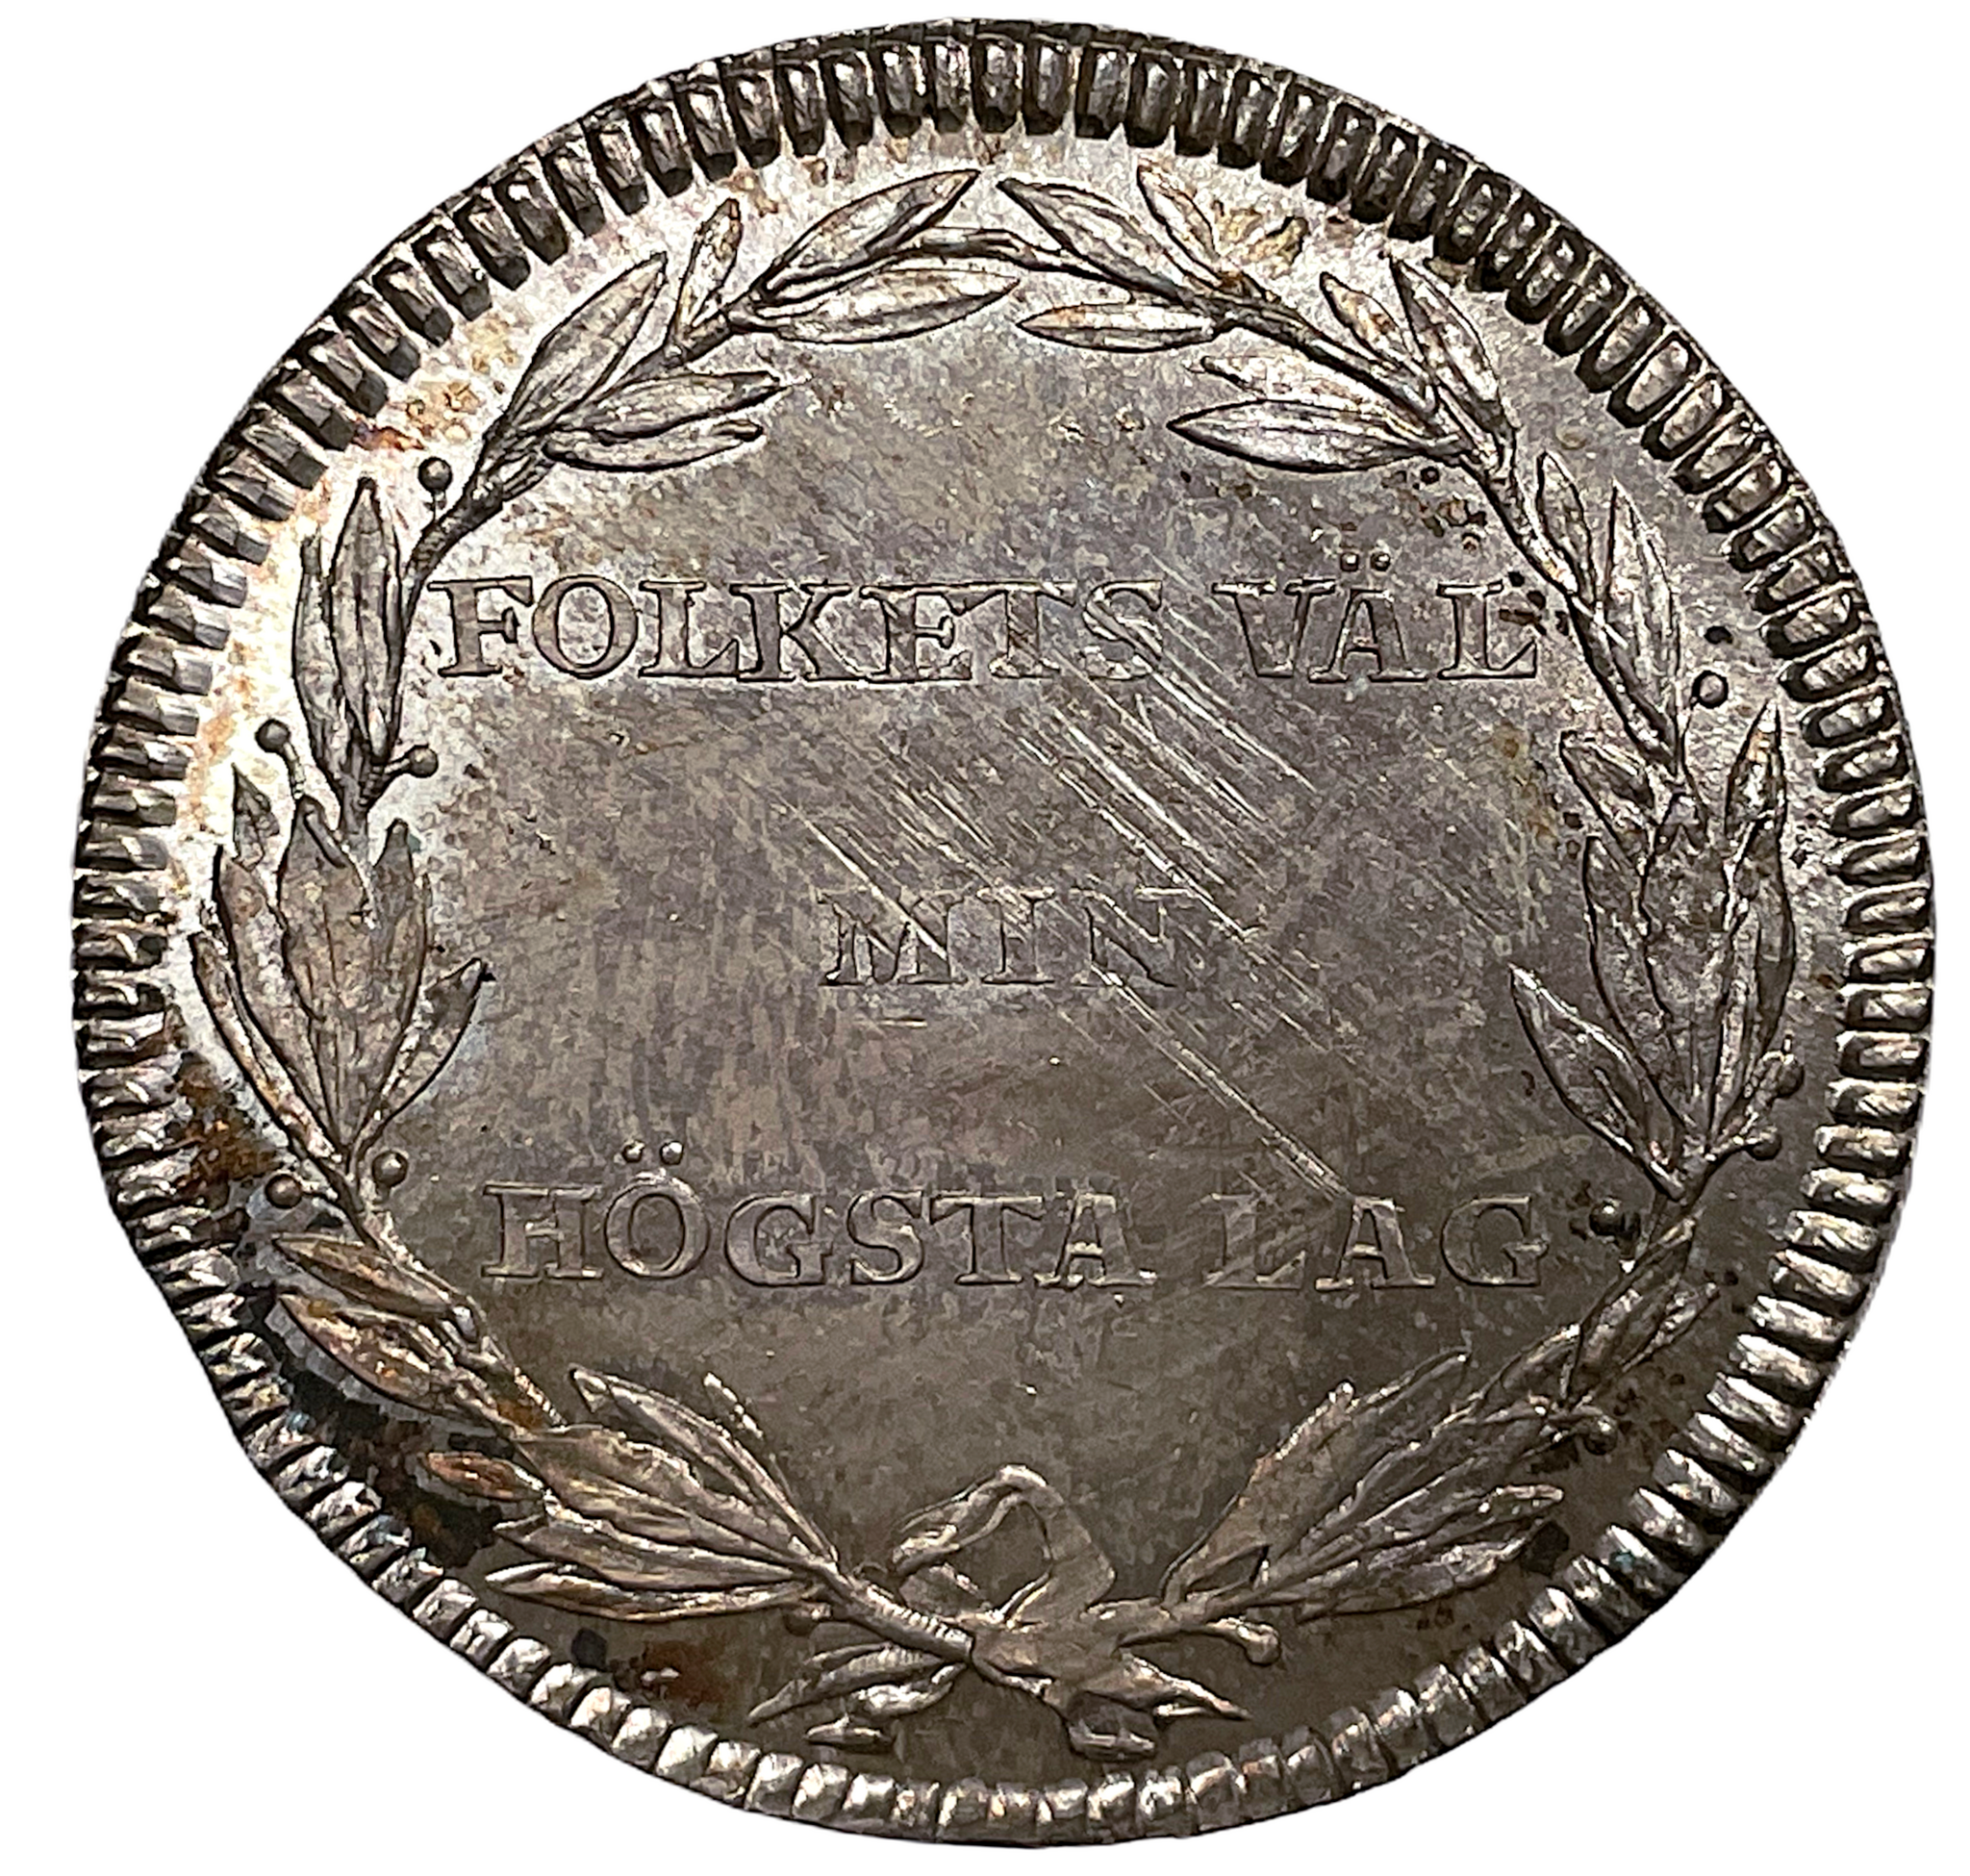 Karl XIII:s kröning - Kastmynt 1/3 Riksdaler 1809 - Ett utsökt vackert ocirkulerat exemplar